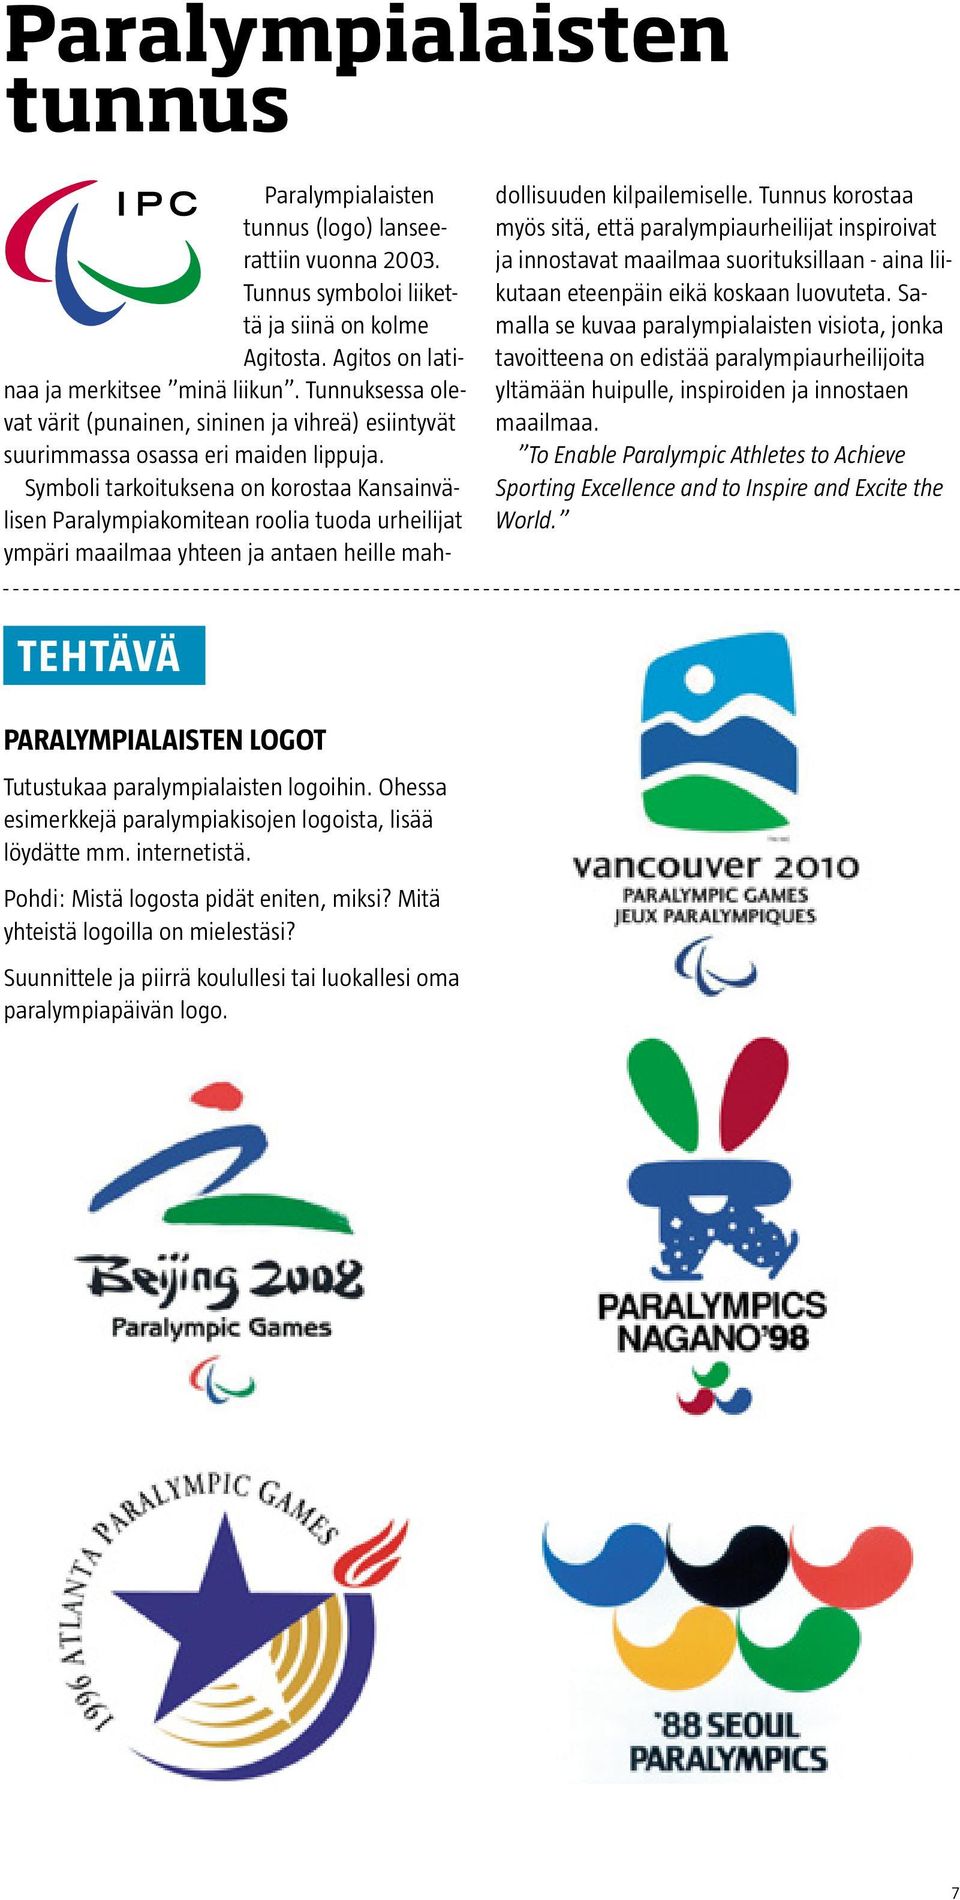 Symboli tarkoituksena on korostaa Kansainvälisen Paralympiakomitean roolia tuoda urheilijat ympäri maailmaa yhteen ja antaen heille mahdollisuuden kilpailemiselle.